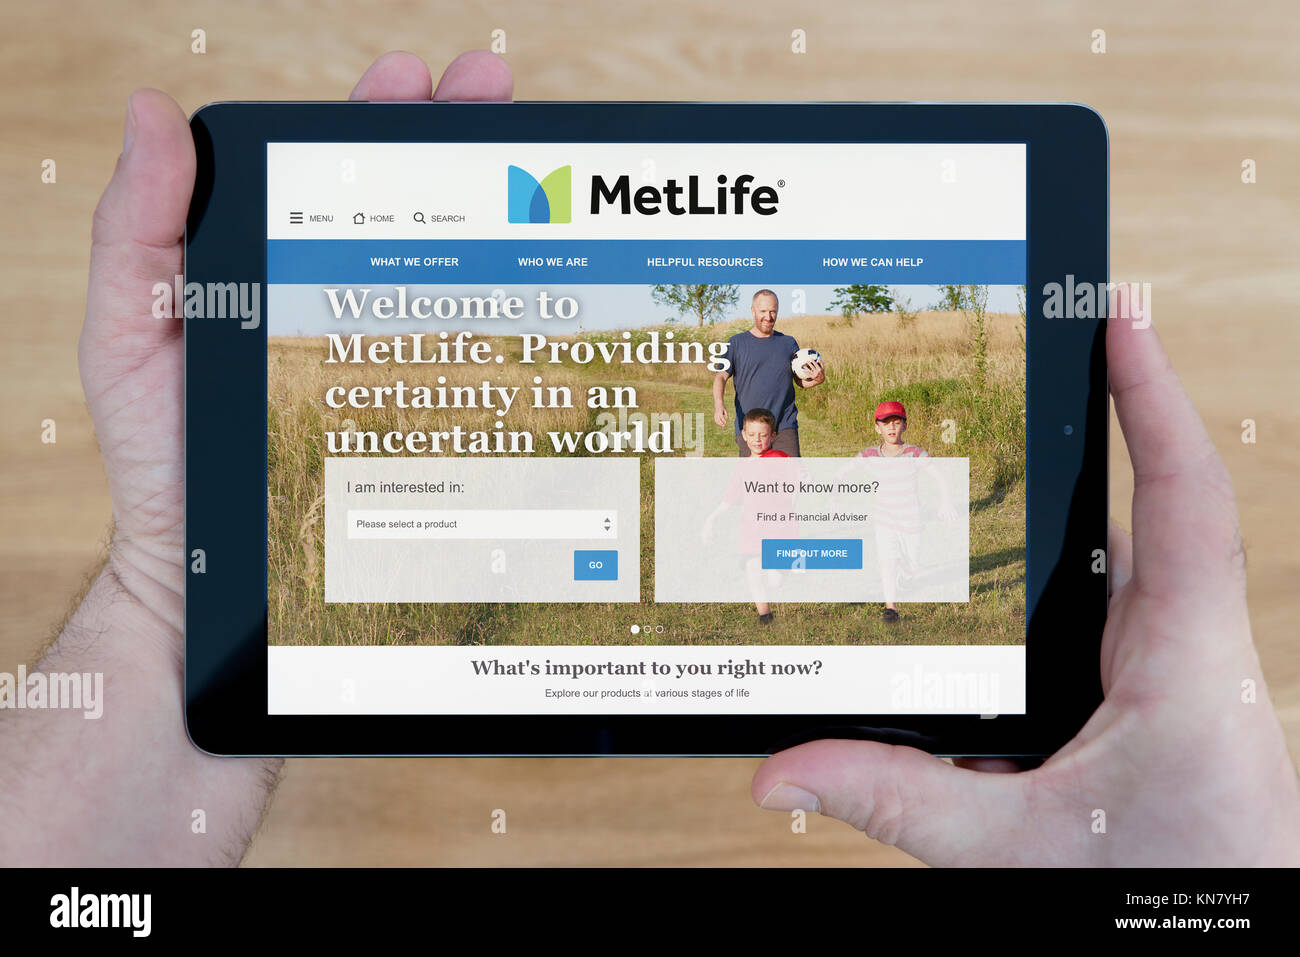 Un homme regarde le MetLife site sur son iPad tablet device, tourné contre une table en bois page contexte (usage éditorial uniquement) Banque D'Images